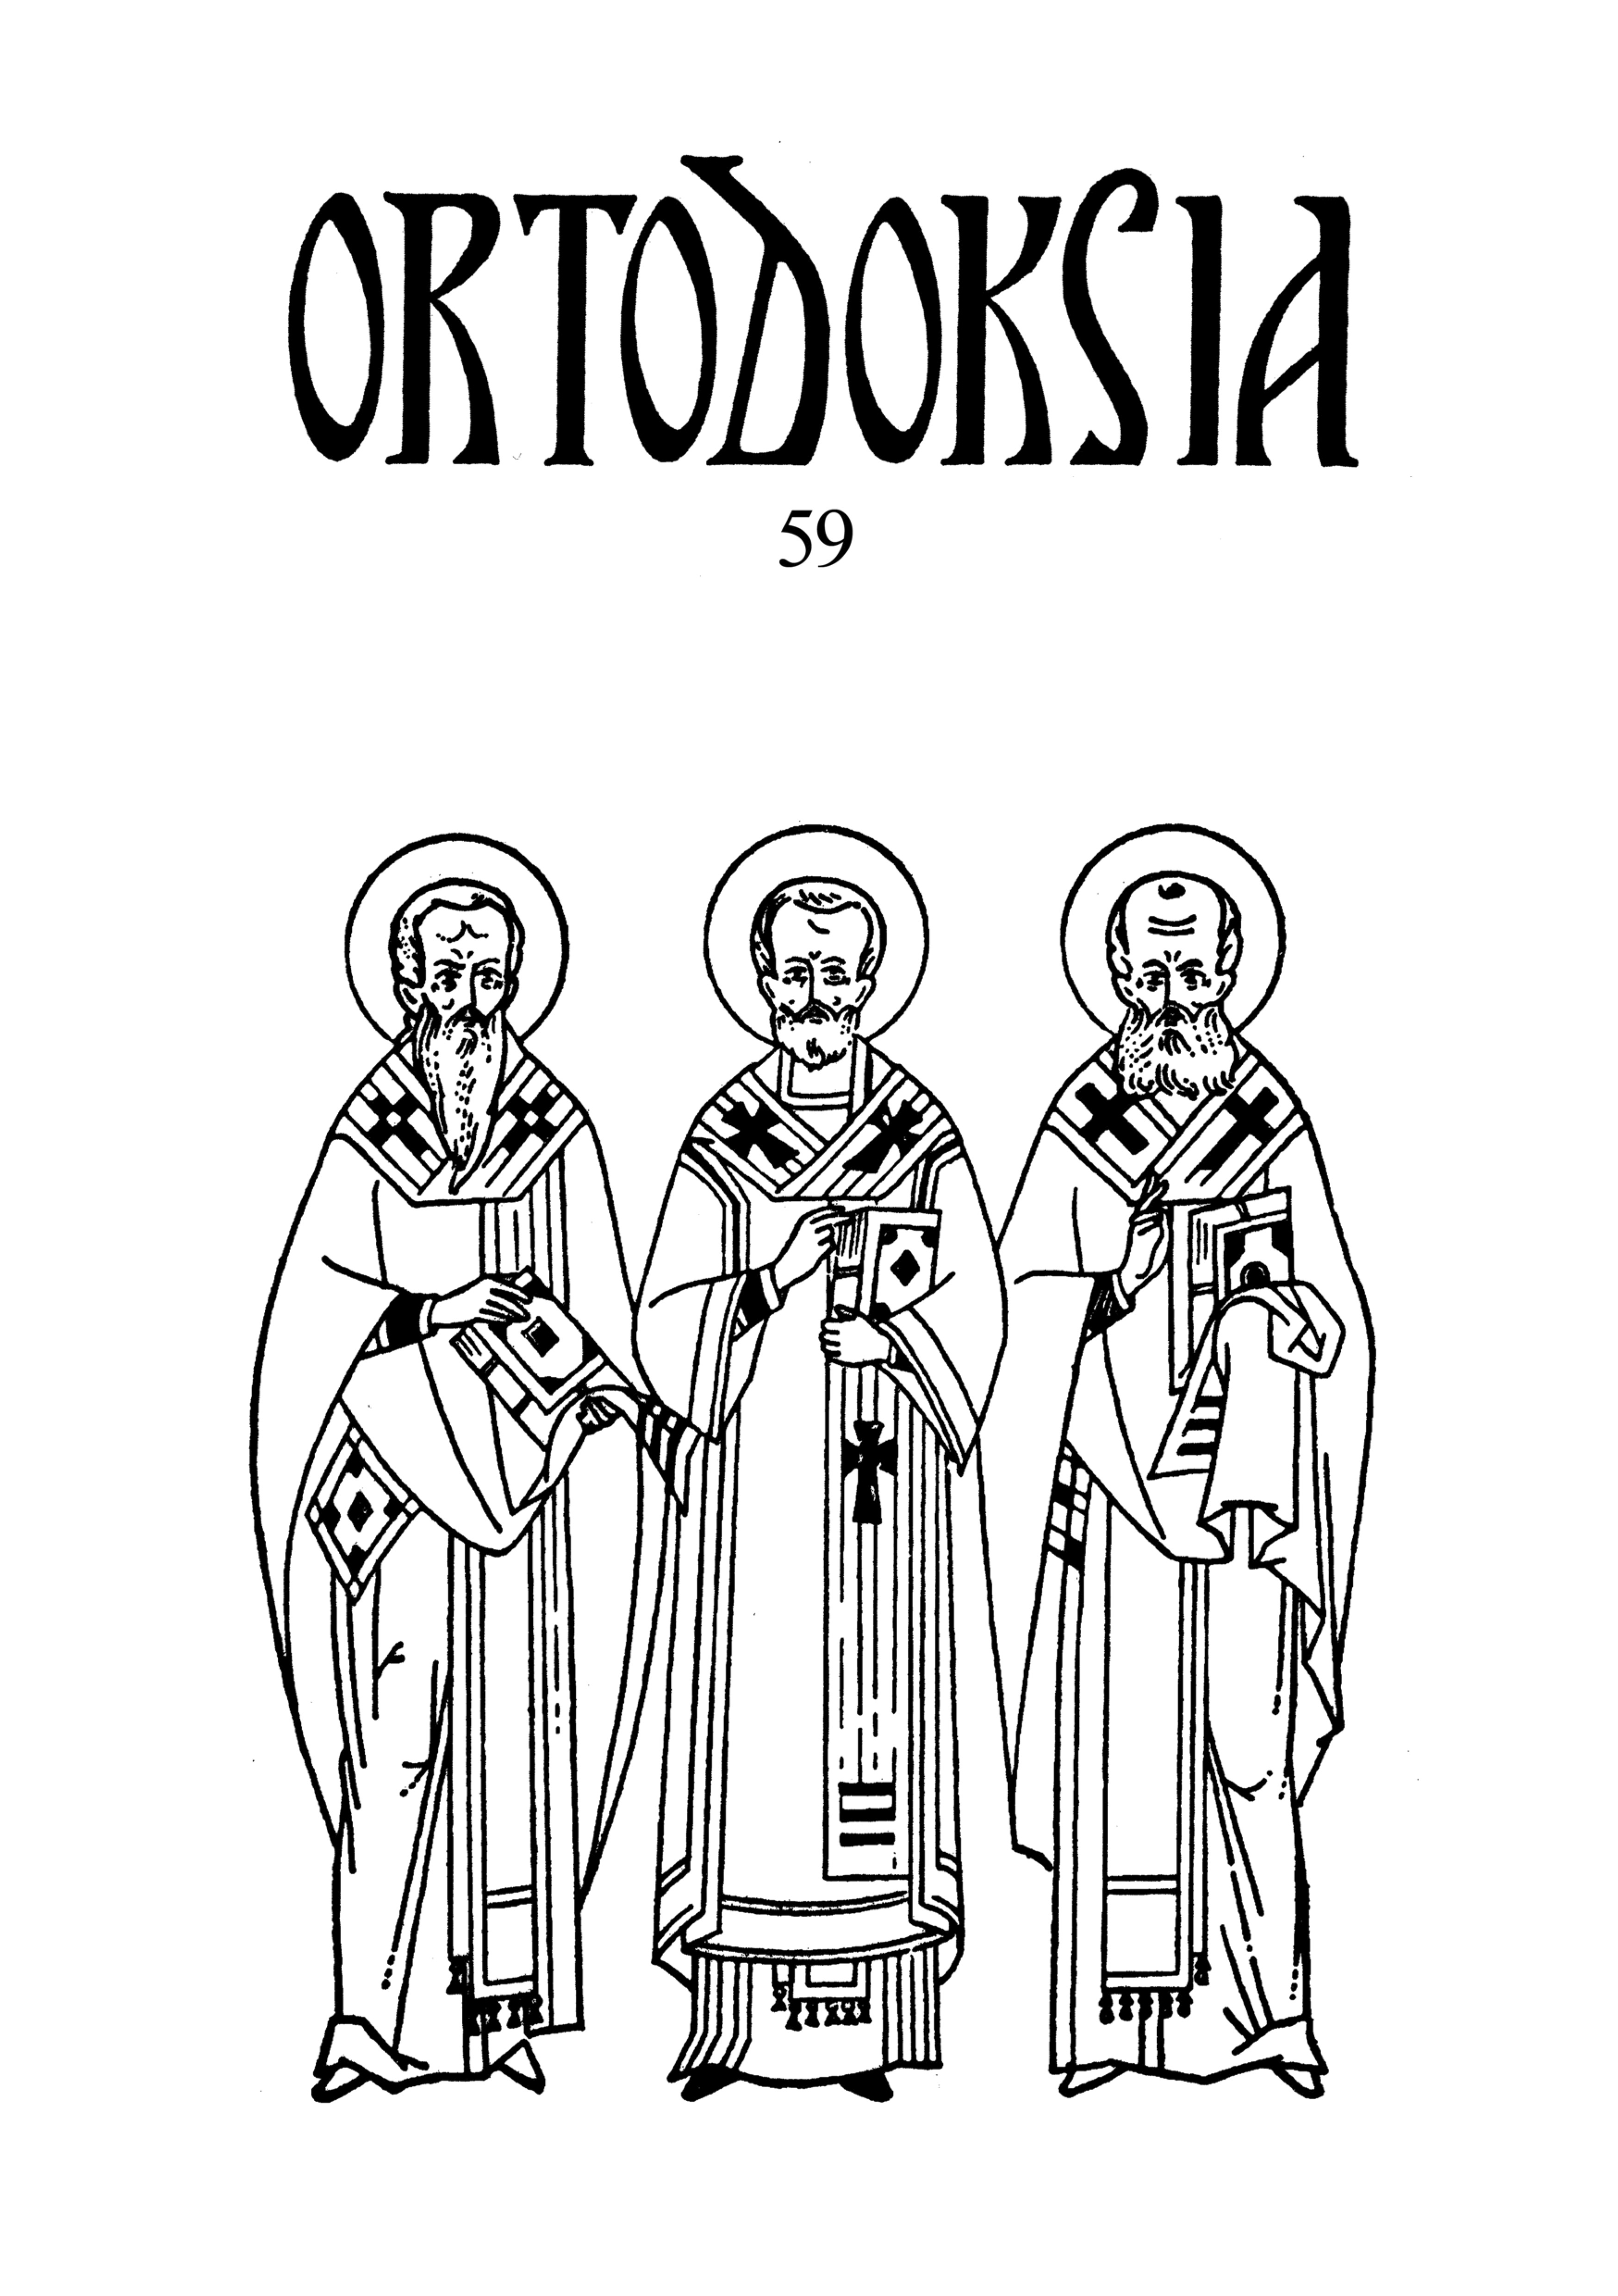 					Näytä Vol 59 (2019): Ortodoksia 59
				